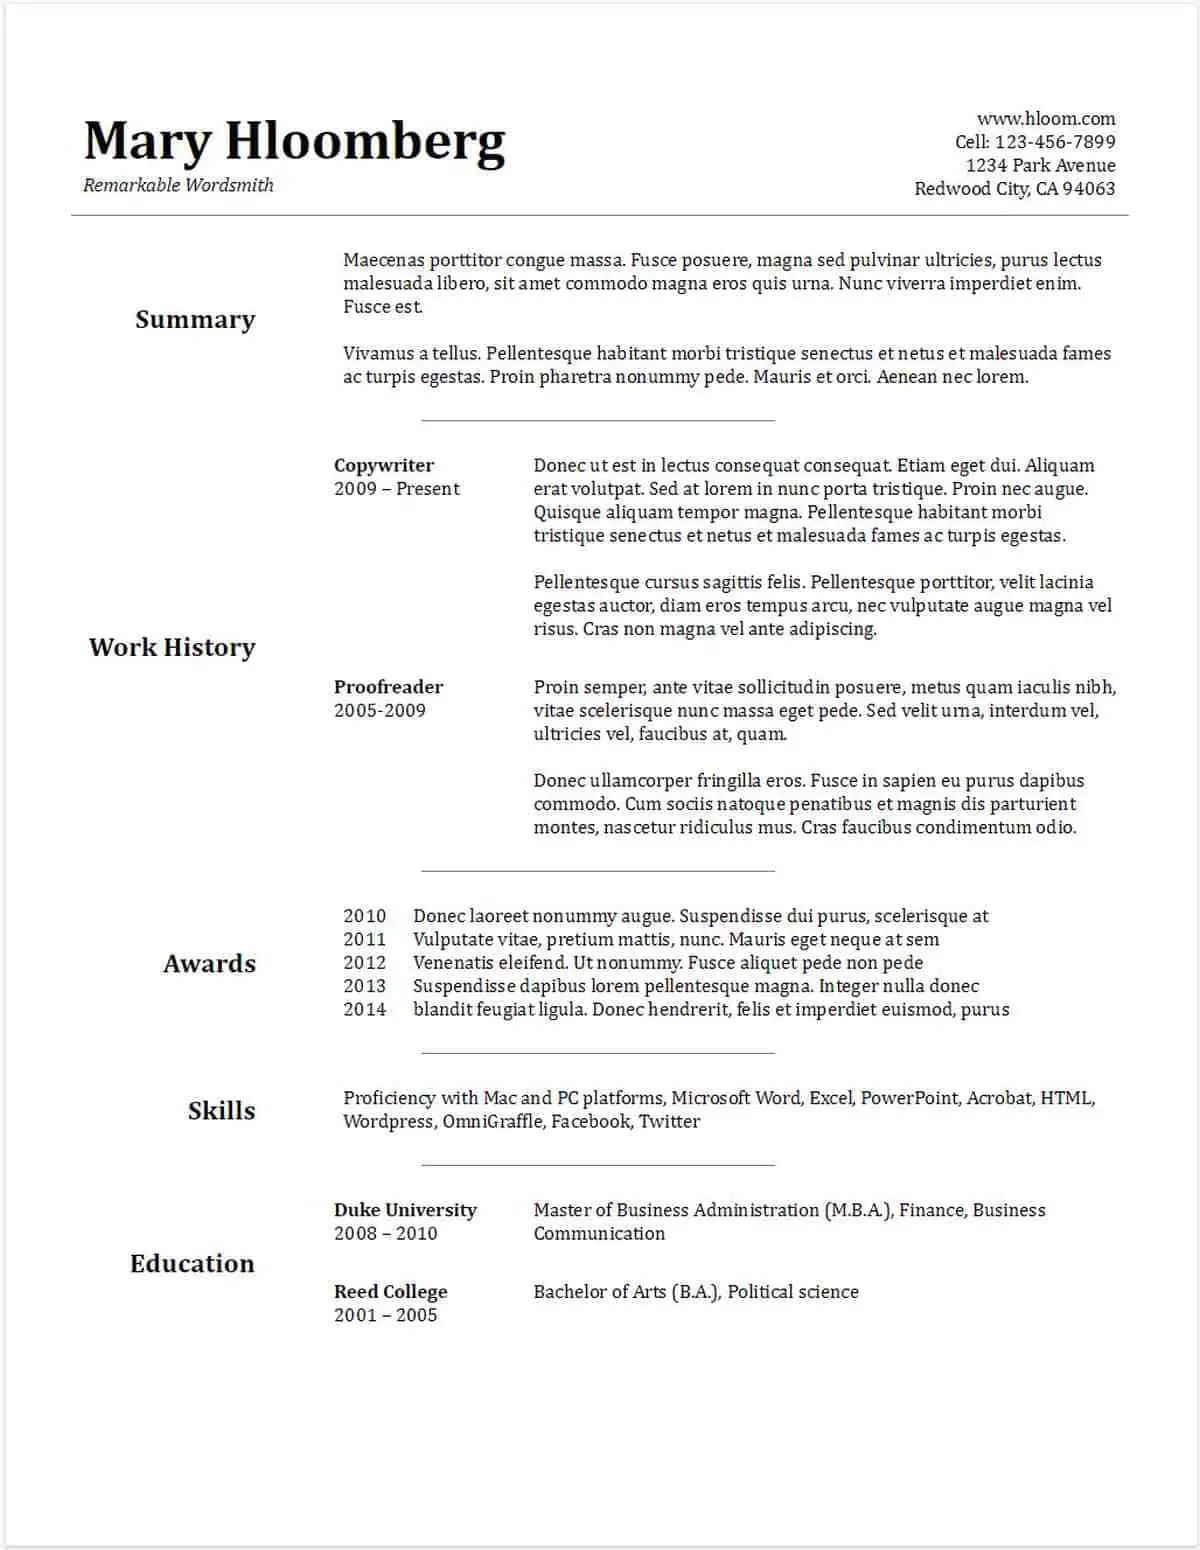 Goldfish Bowl Gdoc | Google Docs Resume Templates [Downloadable PDFs] | Google Docs resume template free | Google resume examples